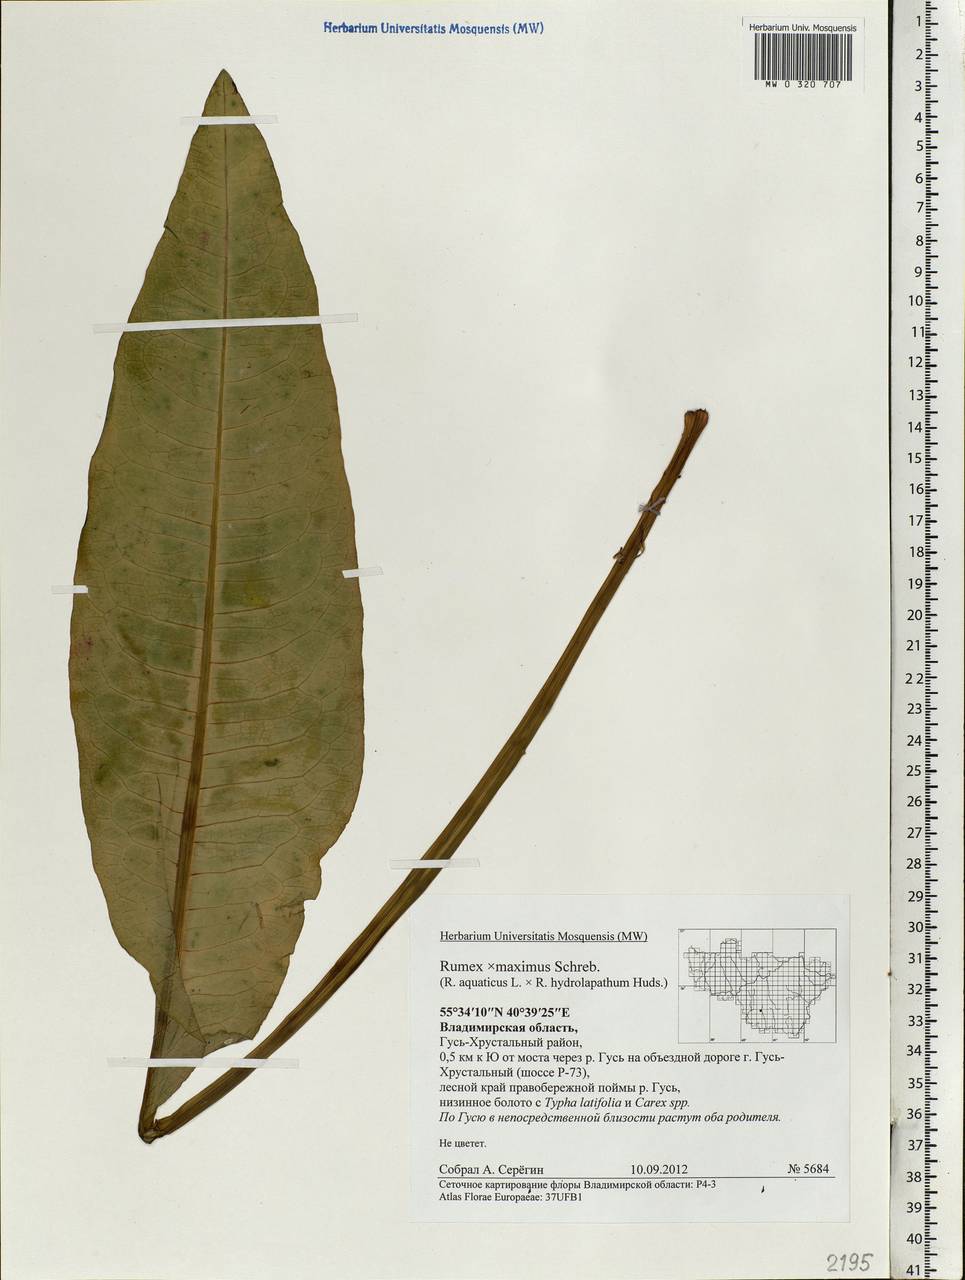 Rumex ×heterophyllus Schultz, Восточная Европа, Центральный район (E4) (Россия)